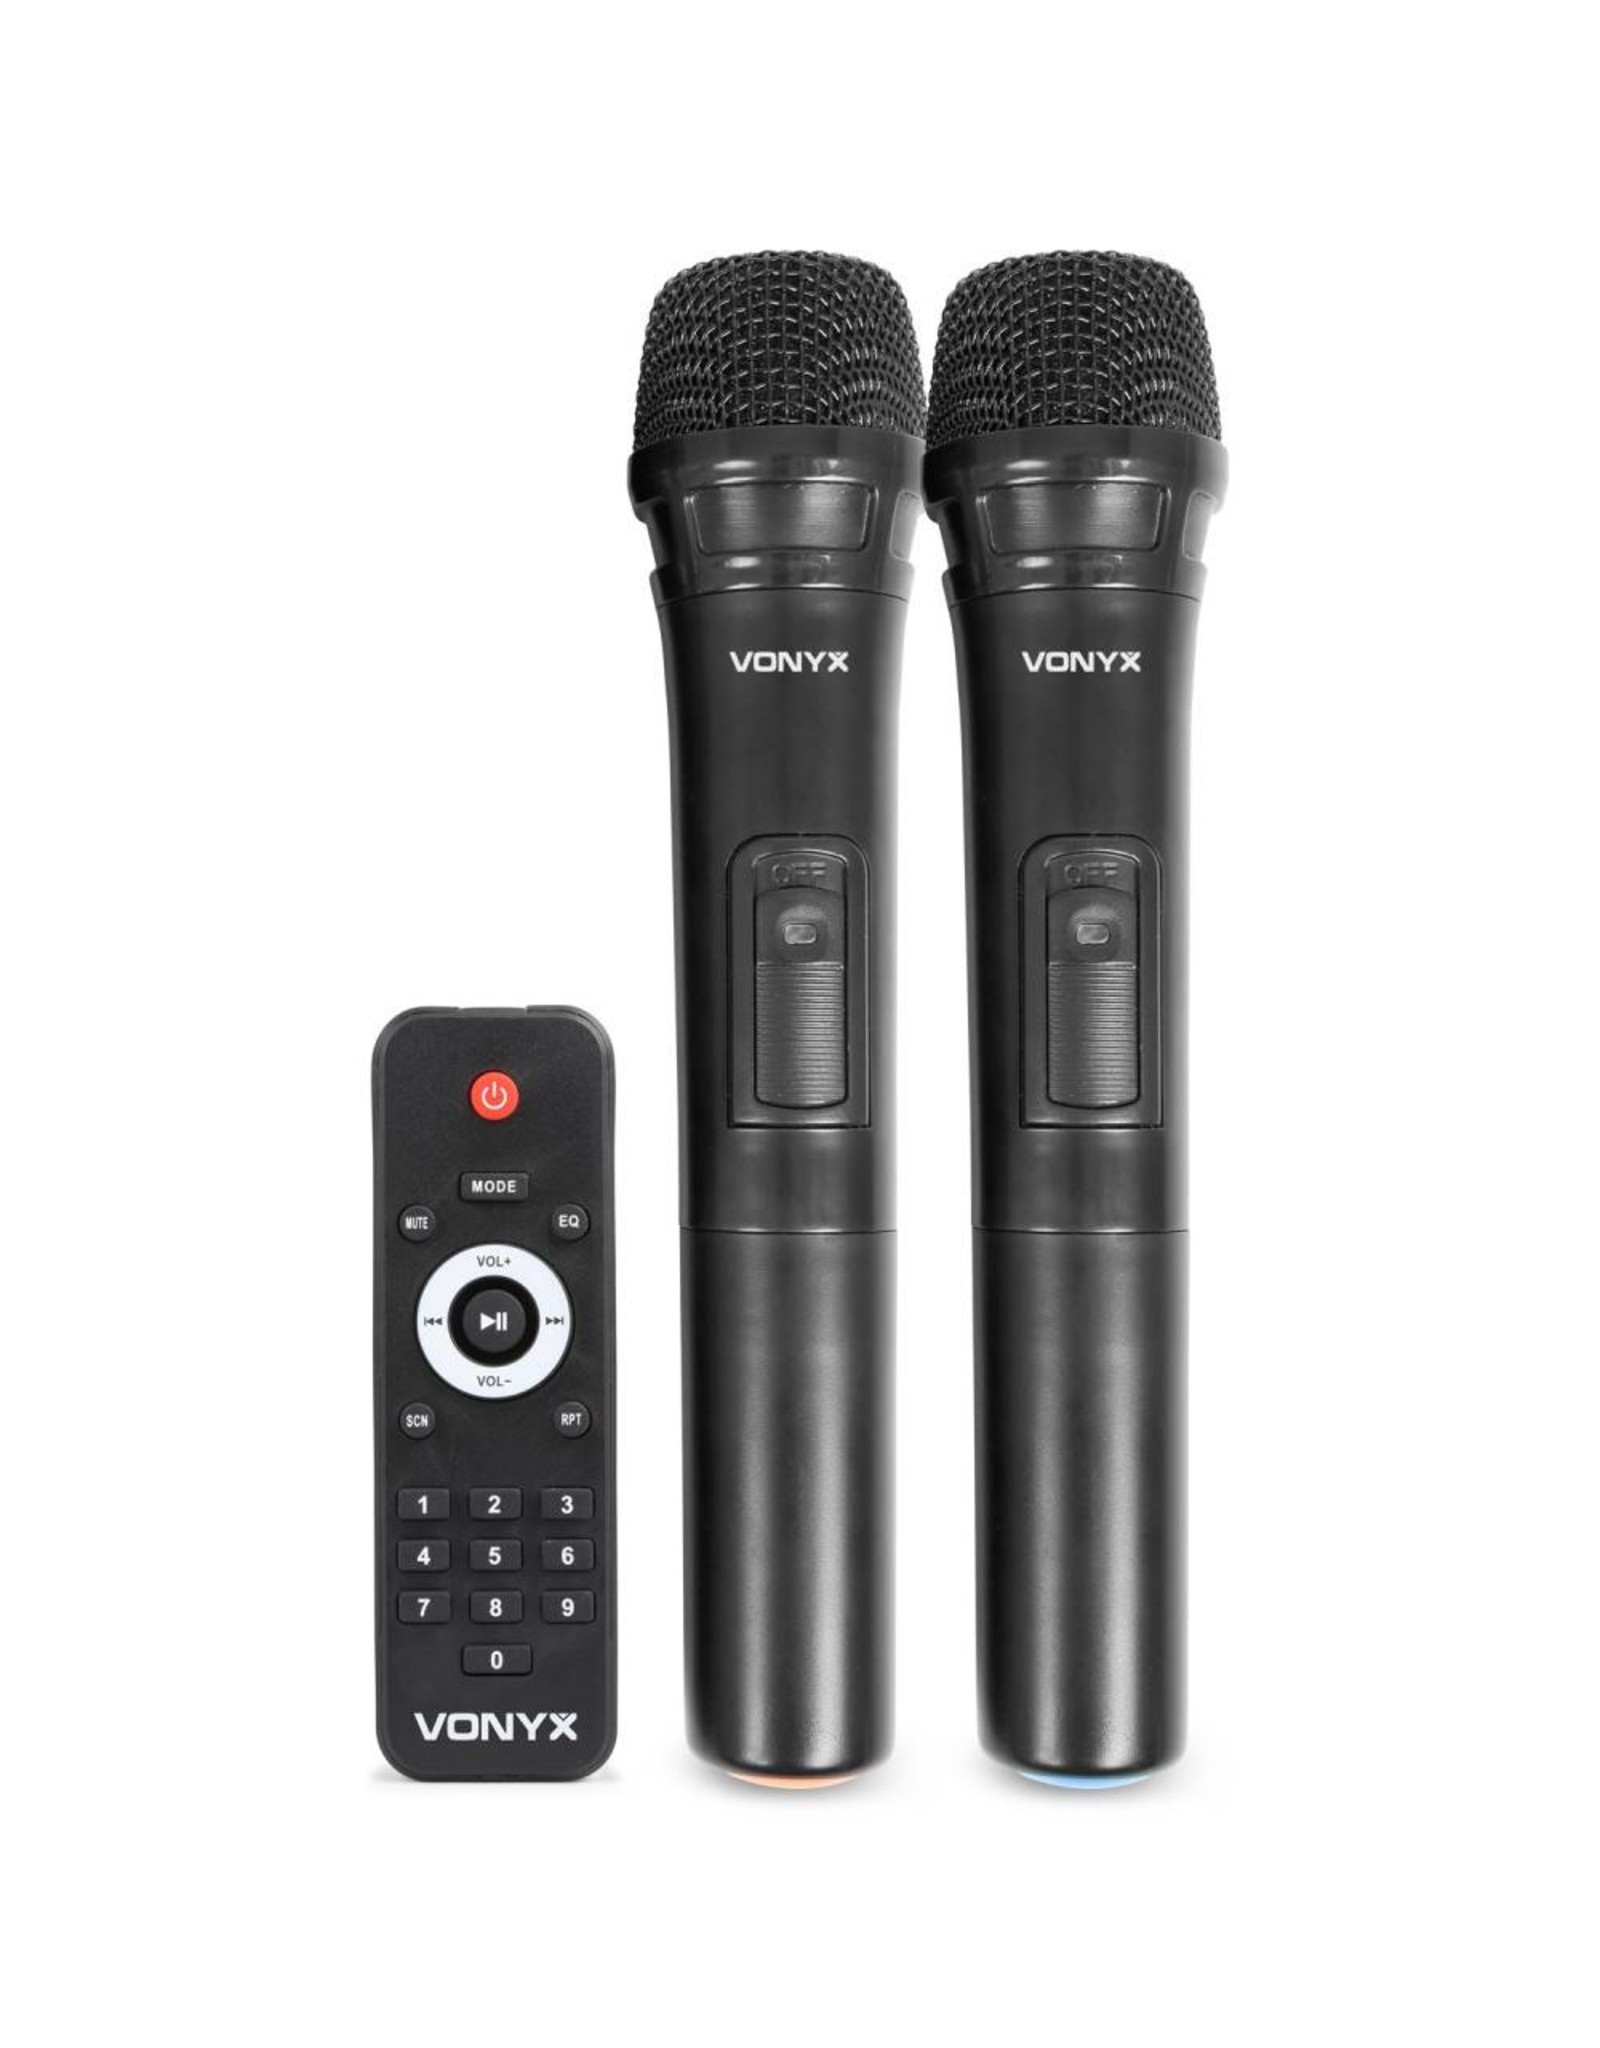 Vonyx Vonyx	SPJ-PA912 Mobiele Geluidsinstallatie ABS 12" 2 UHF/USB/MP3